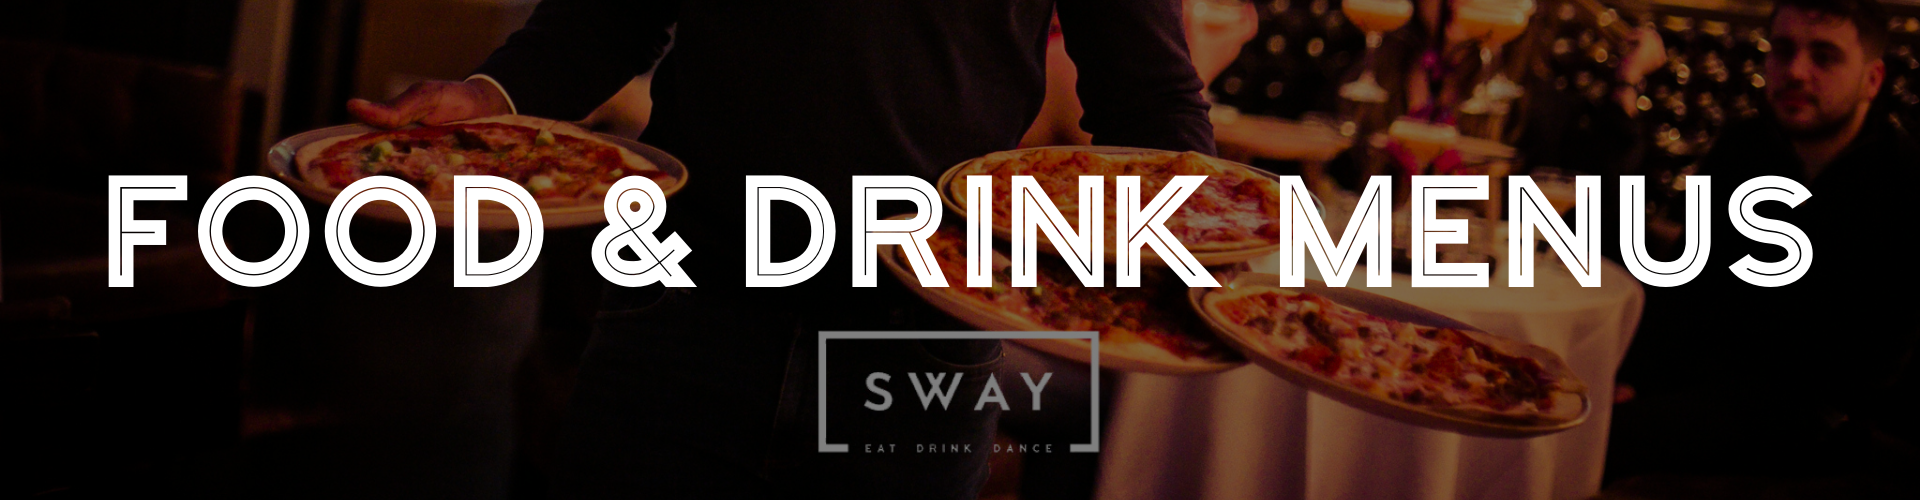 Food & Drink Menus at Sway